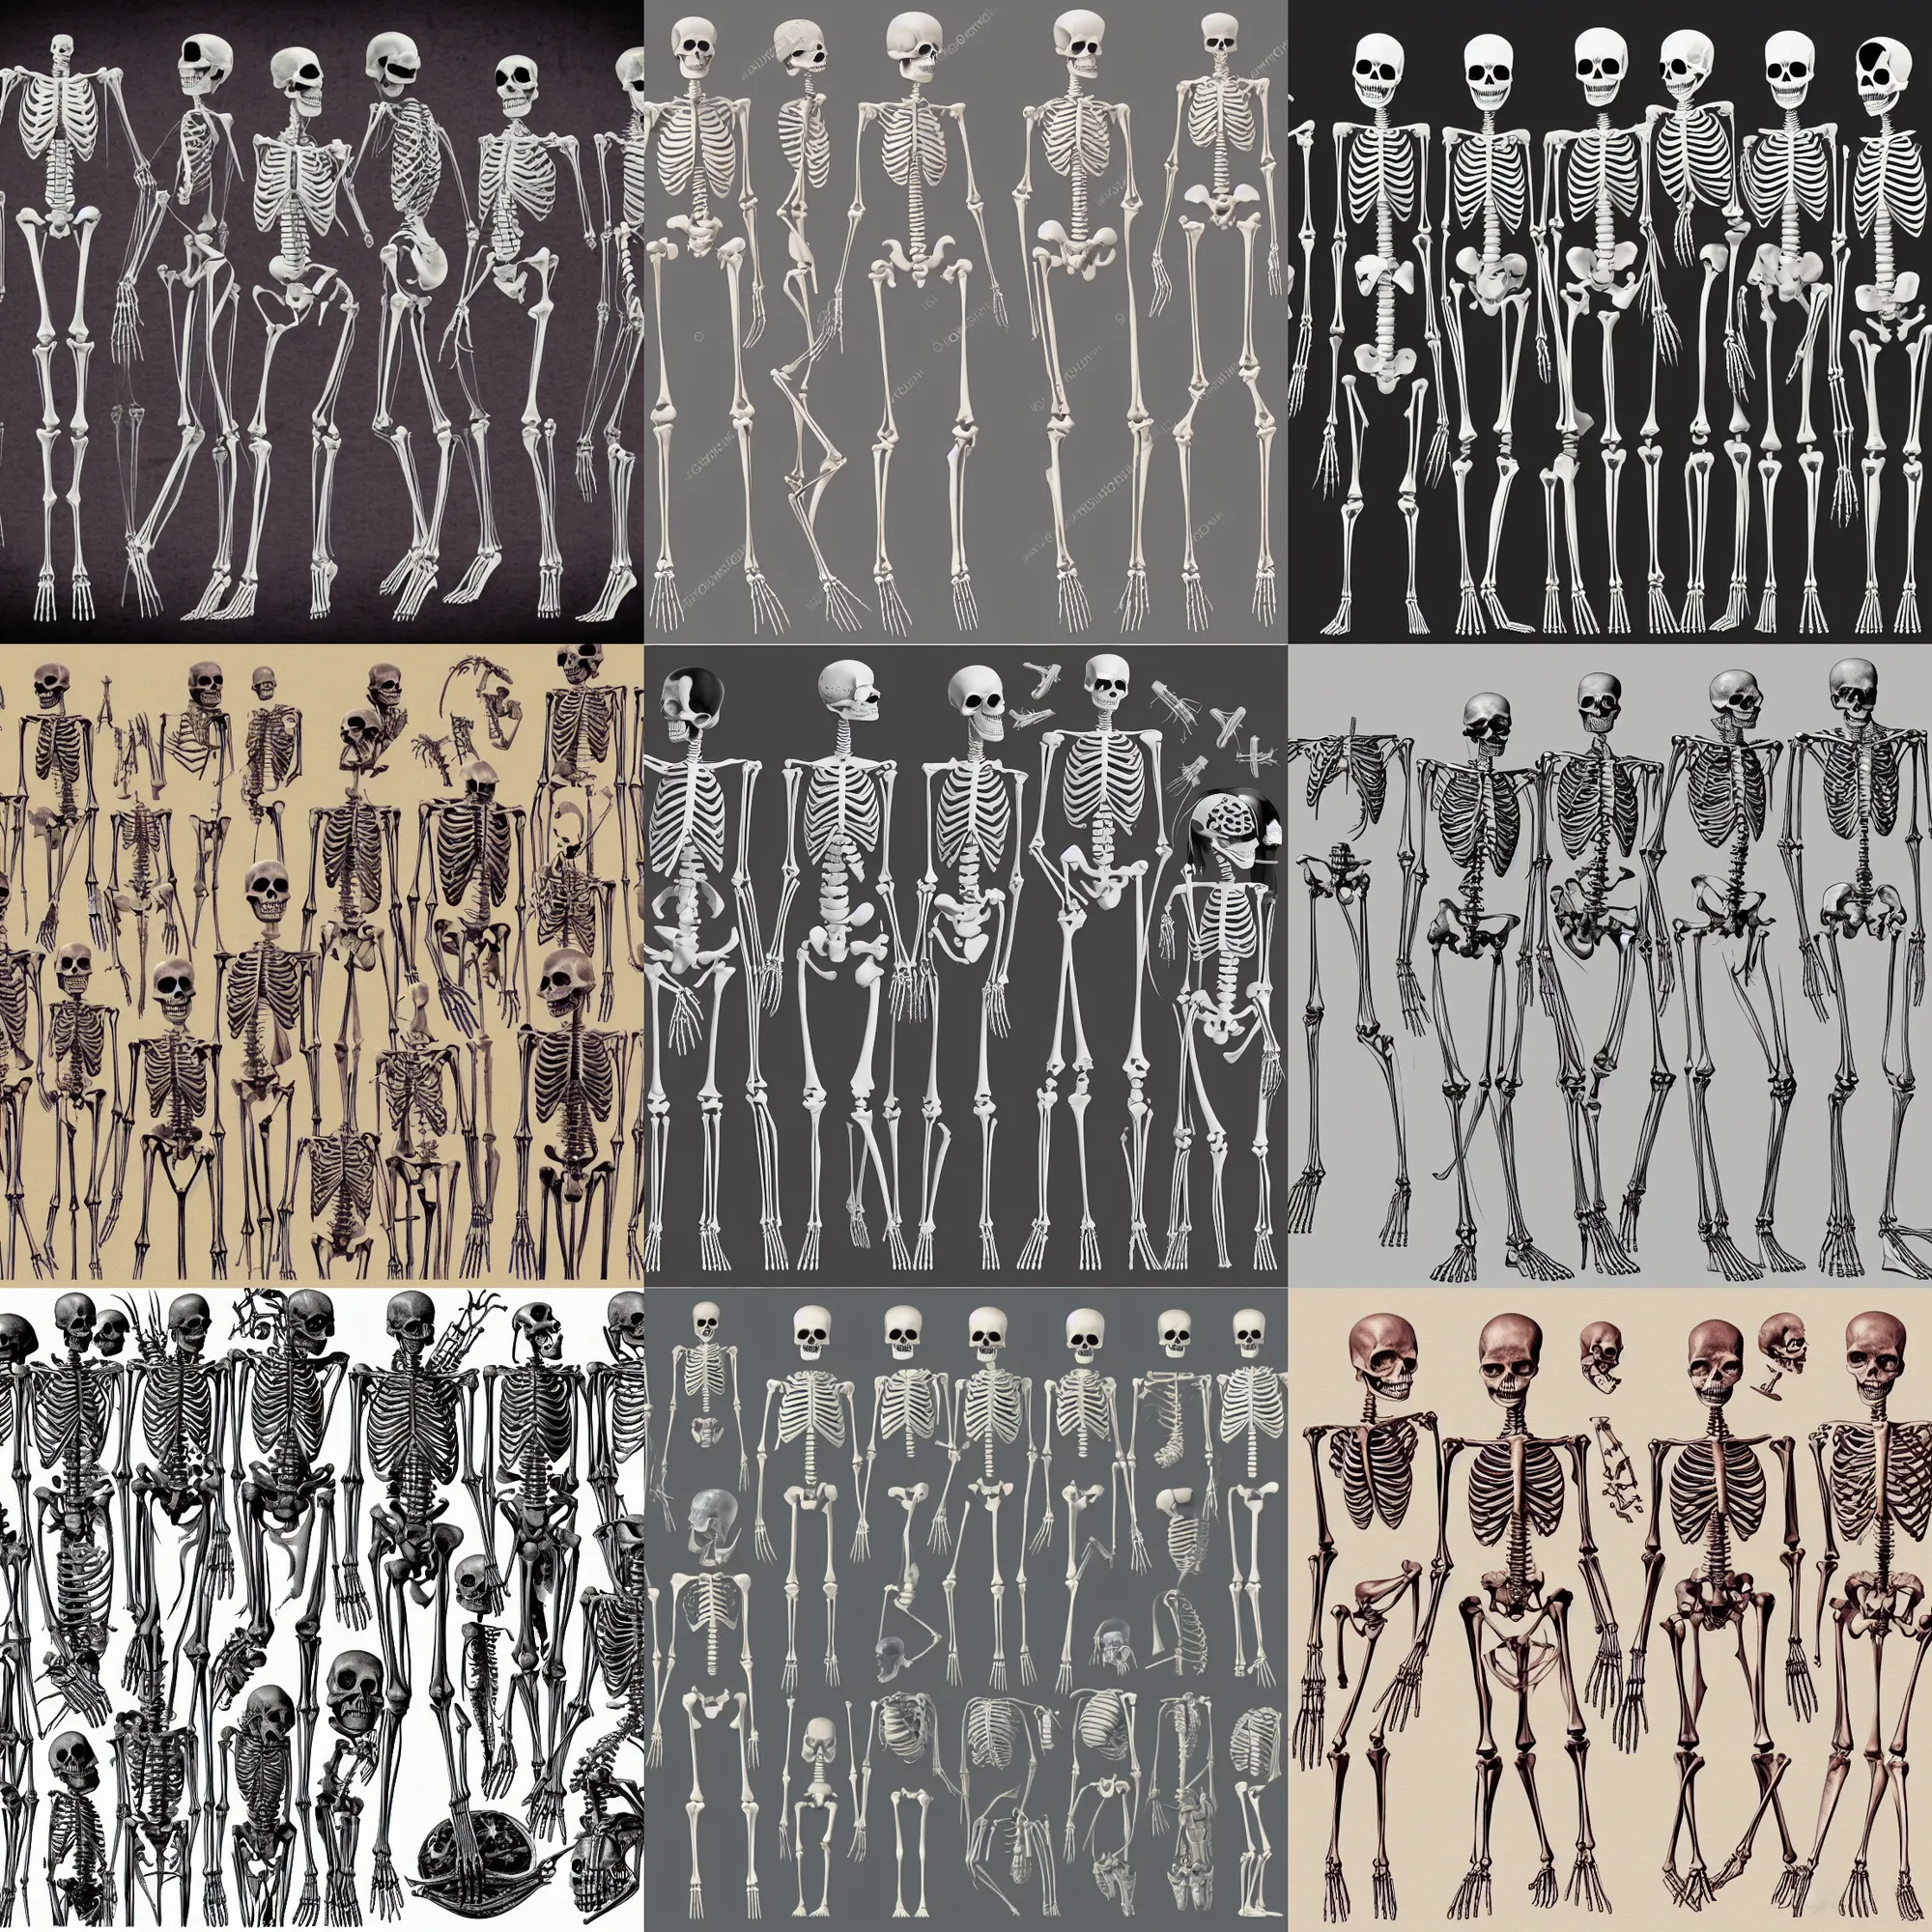 Prompt: medical illustration of skeletal structure of aliens